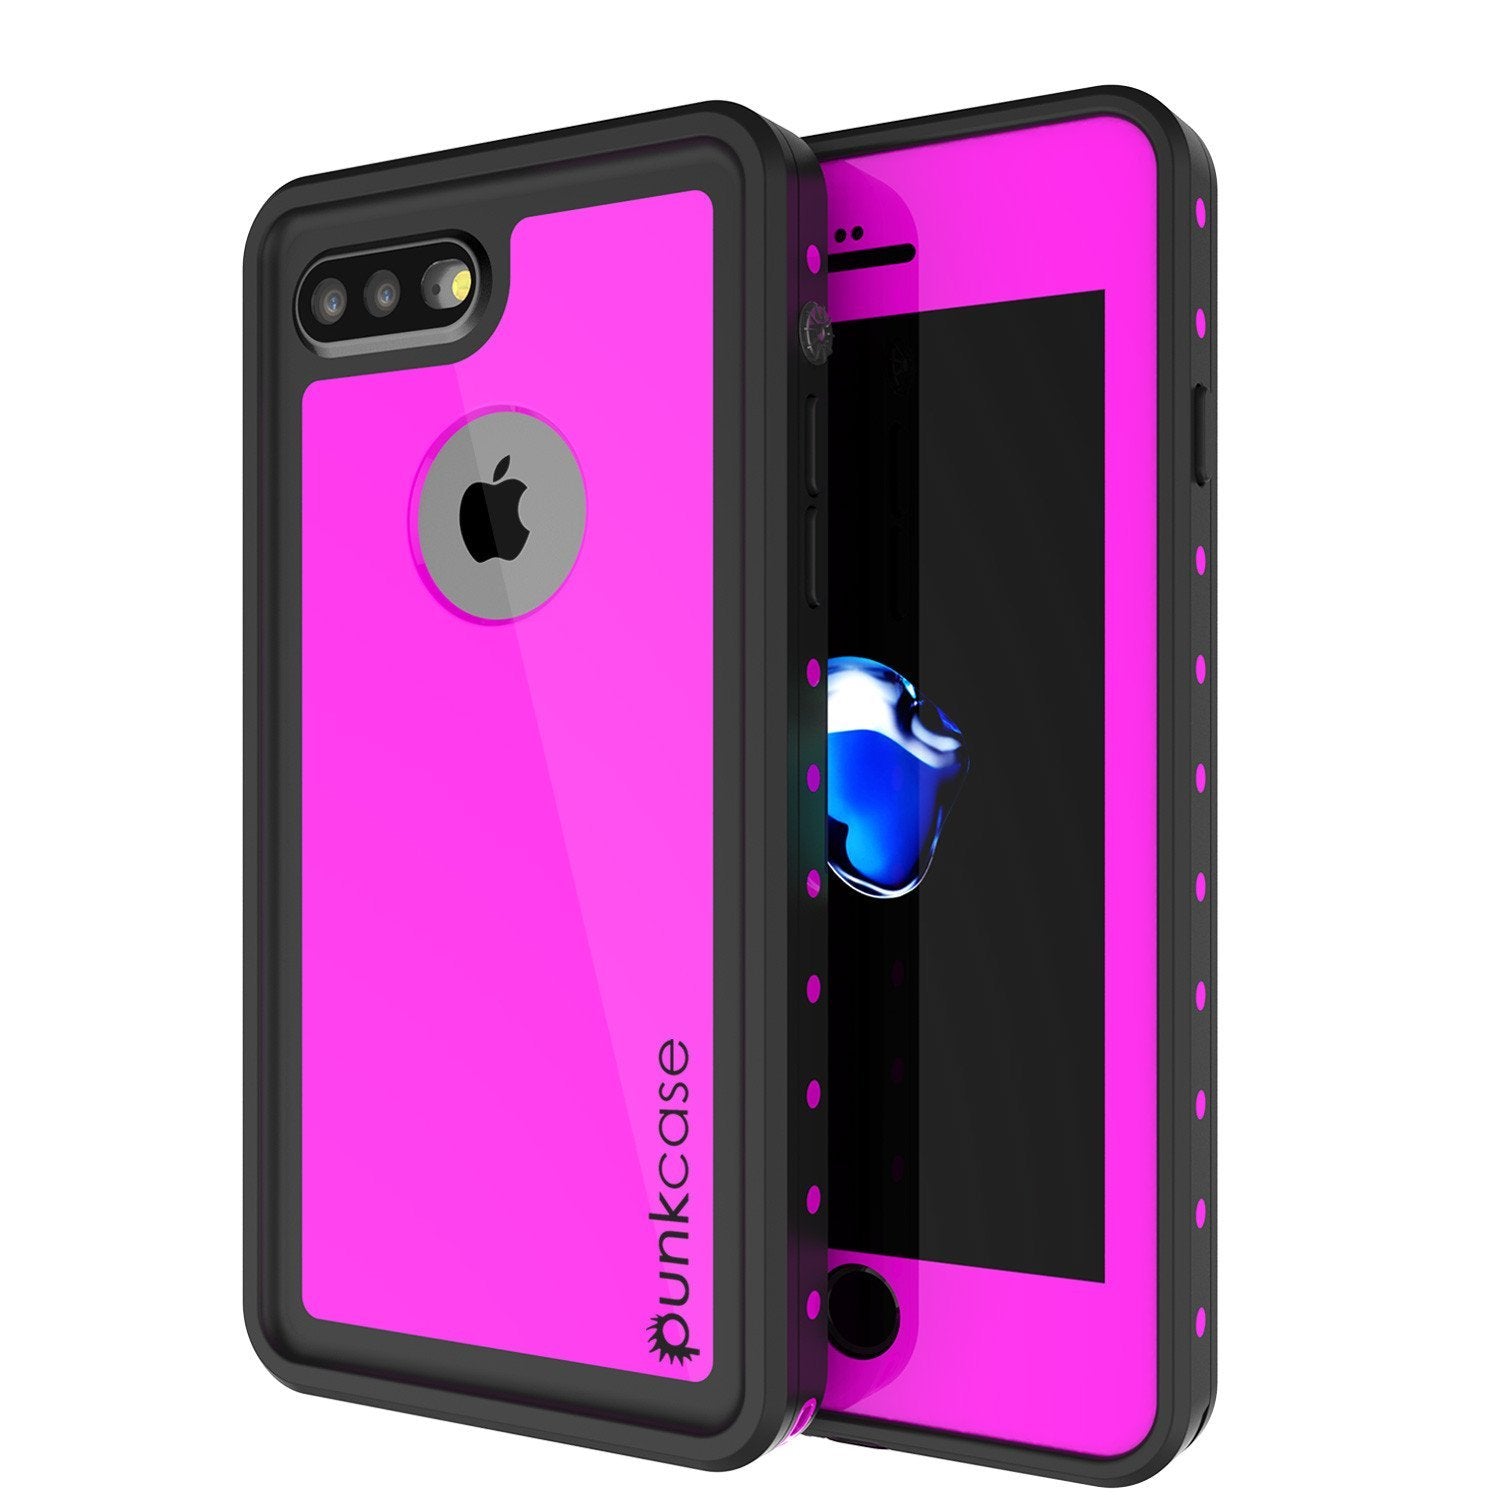 iPhone 8+ Plus Waterproof IP68 Case, Punkcase [Pink] [StudStar Series] [Slim Fit] [Dirtproof]